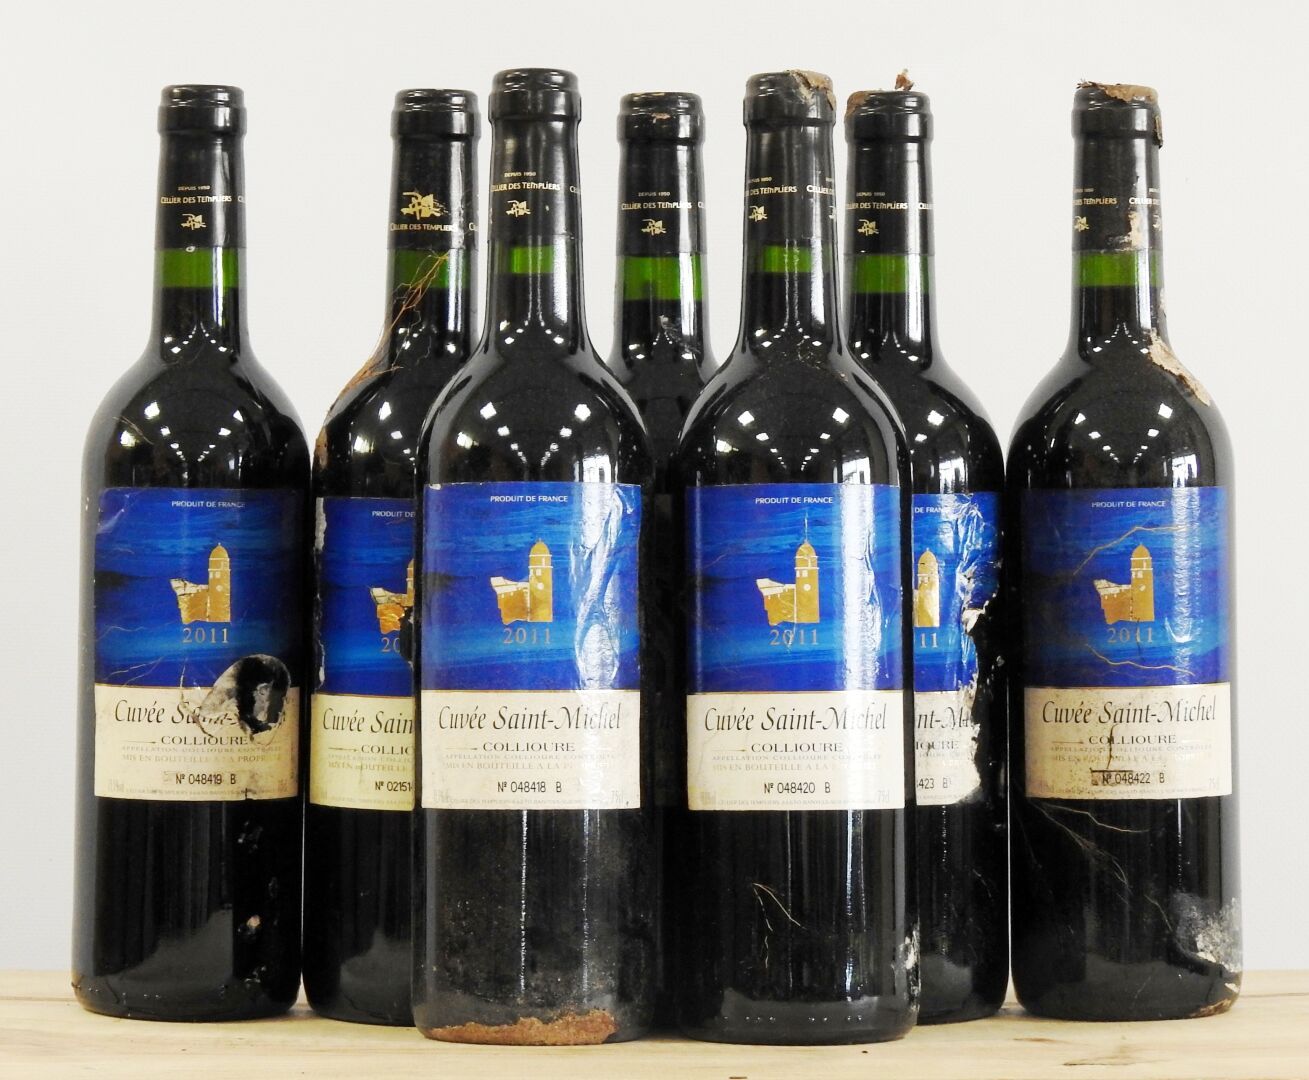 Null 7 bottles

Cuvée Saint Michet - Collioure - cellier des Templiers - 2011

W&hellip;